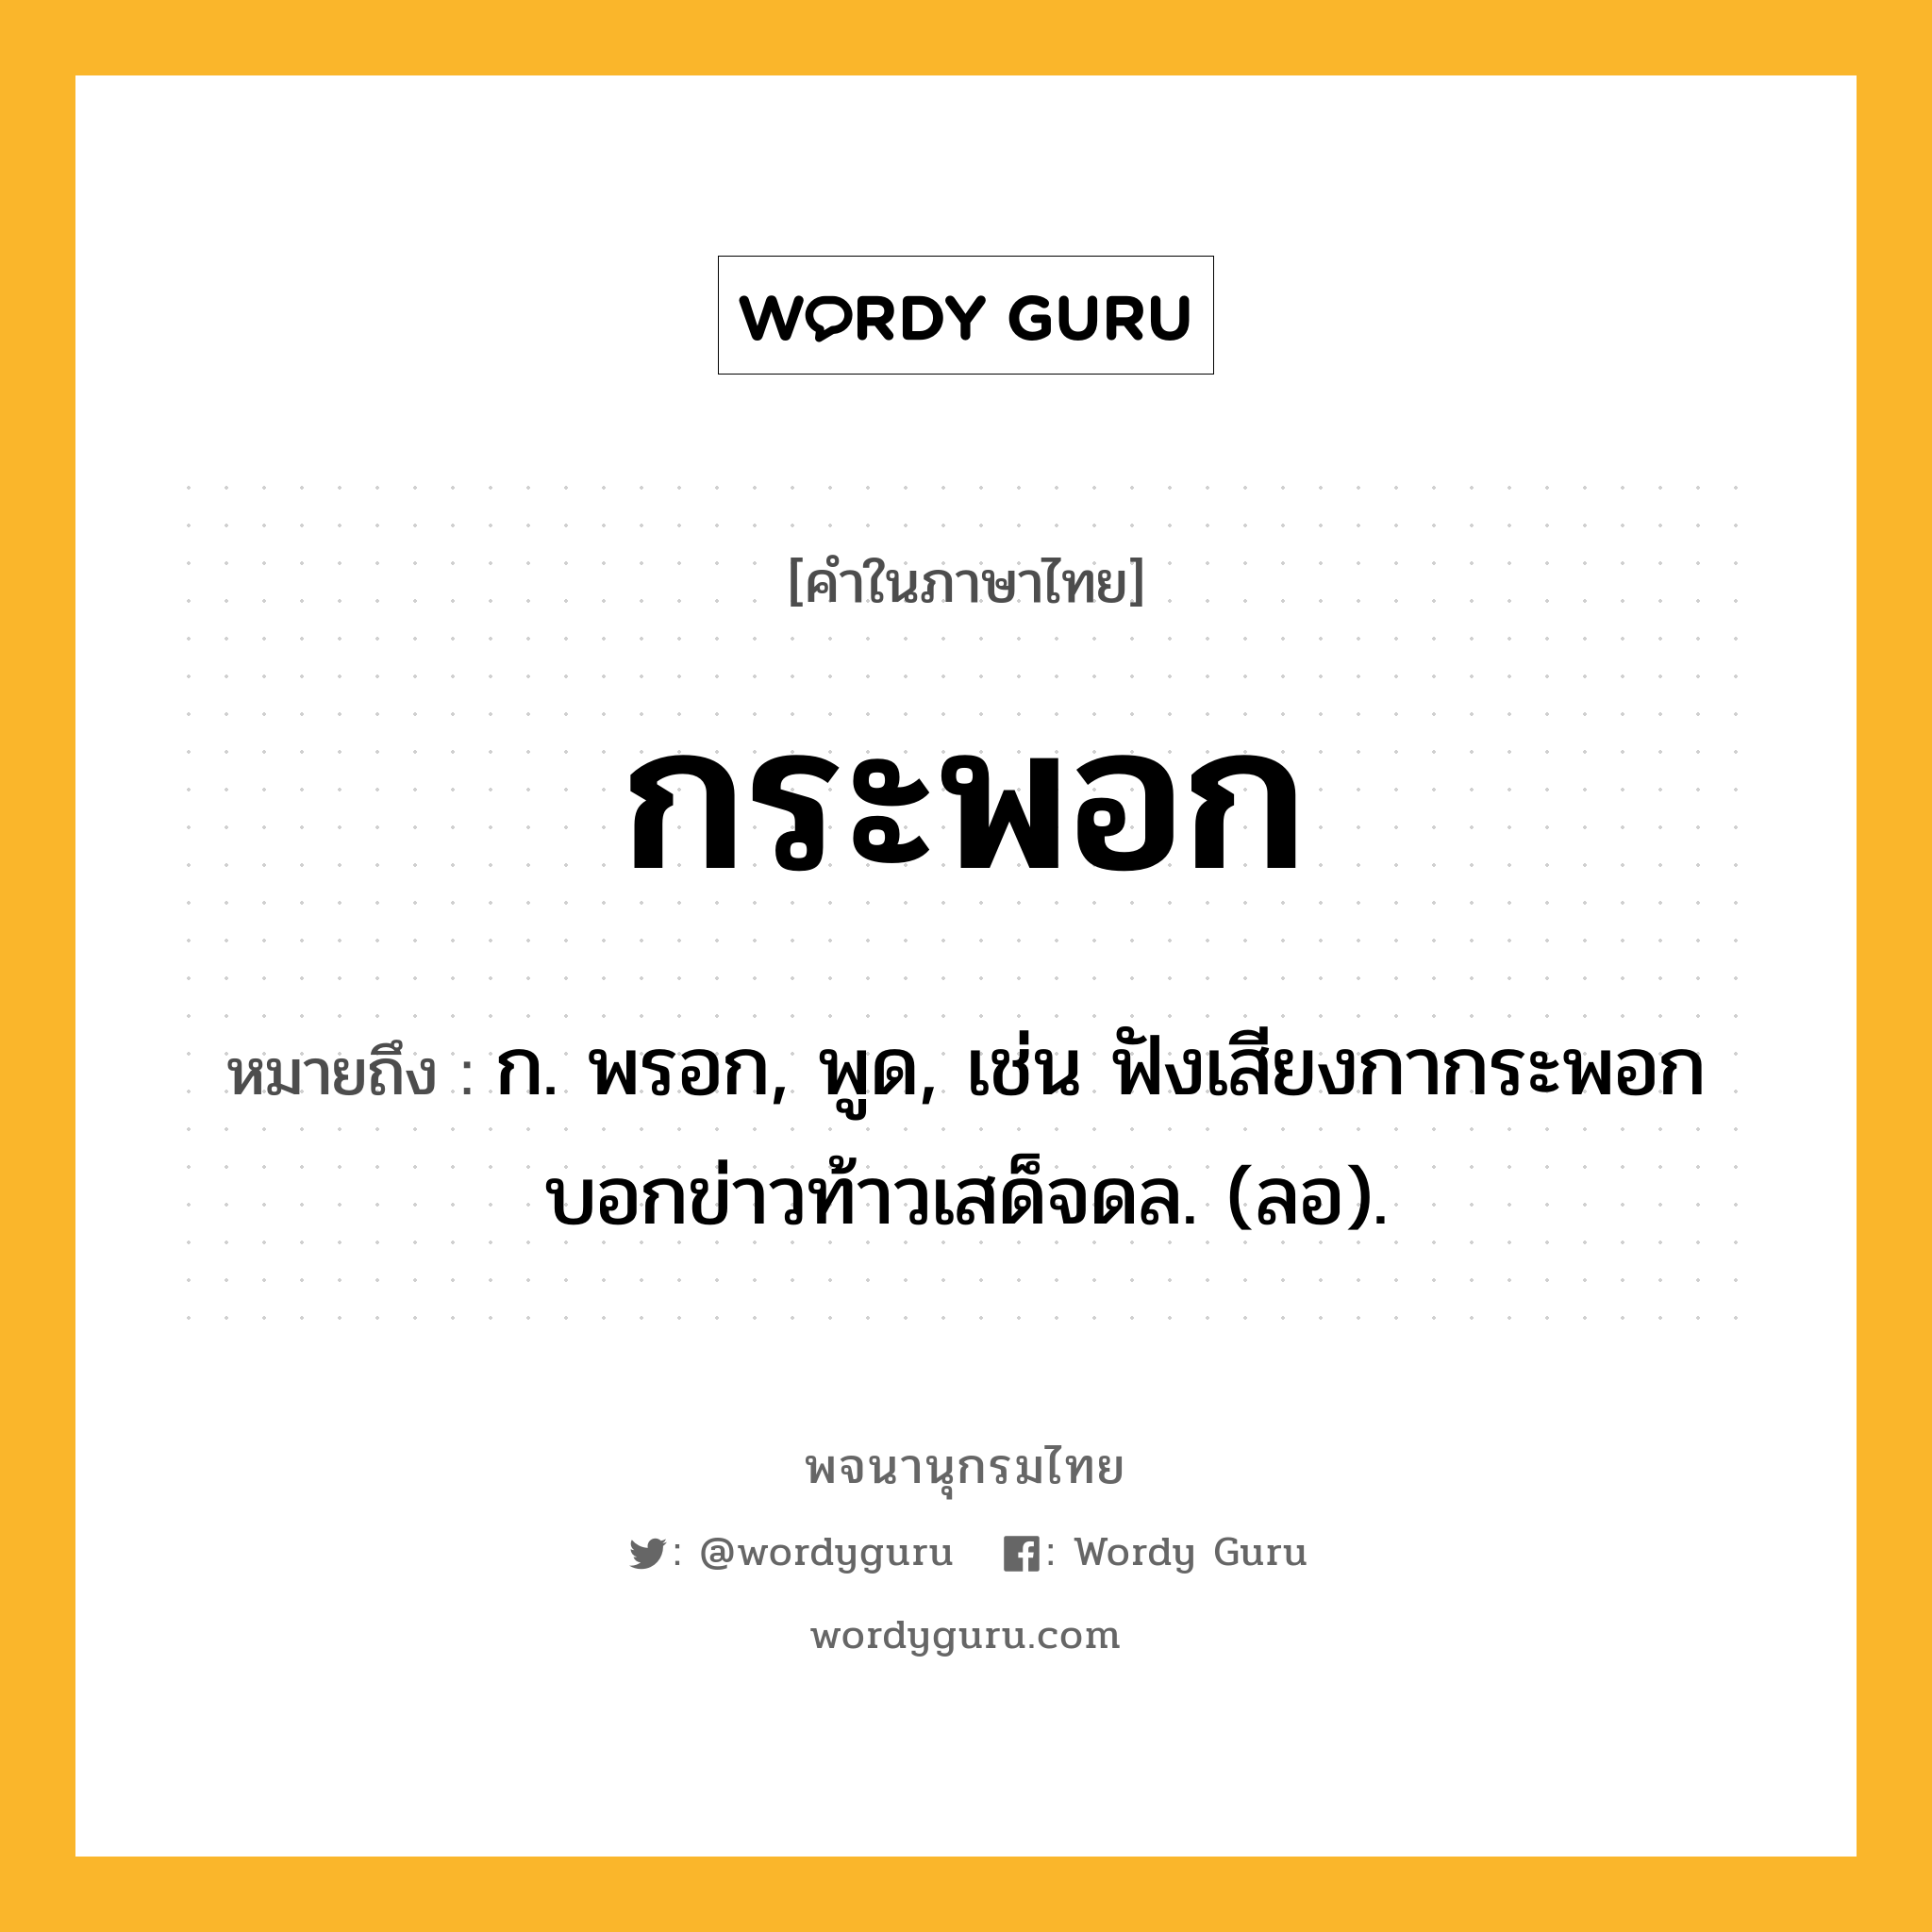 กระพอก ความหมาย หมายถึงอะไร?, คำในภาษาไทย กระพอก หมายถึง ก. พรอก, พูด, เช่น ฟังเสียงกากระพอก บอกข่าวท้าวเสด็จดล. (ลอ).